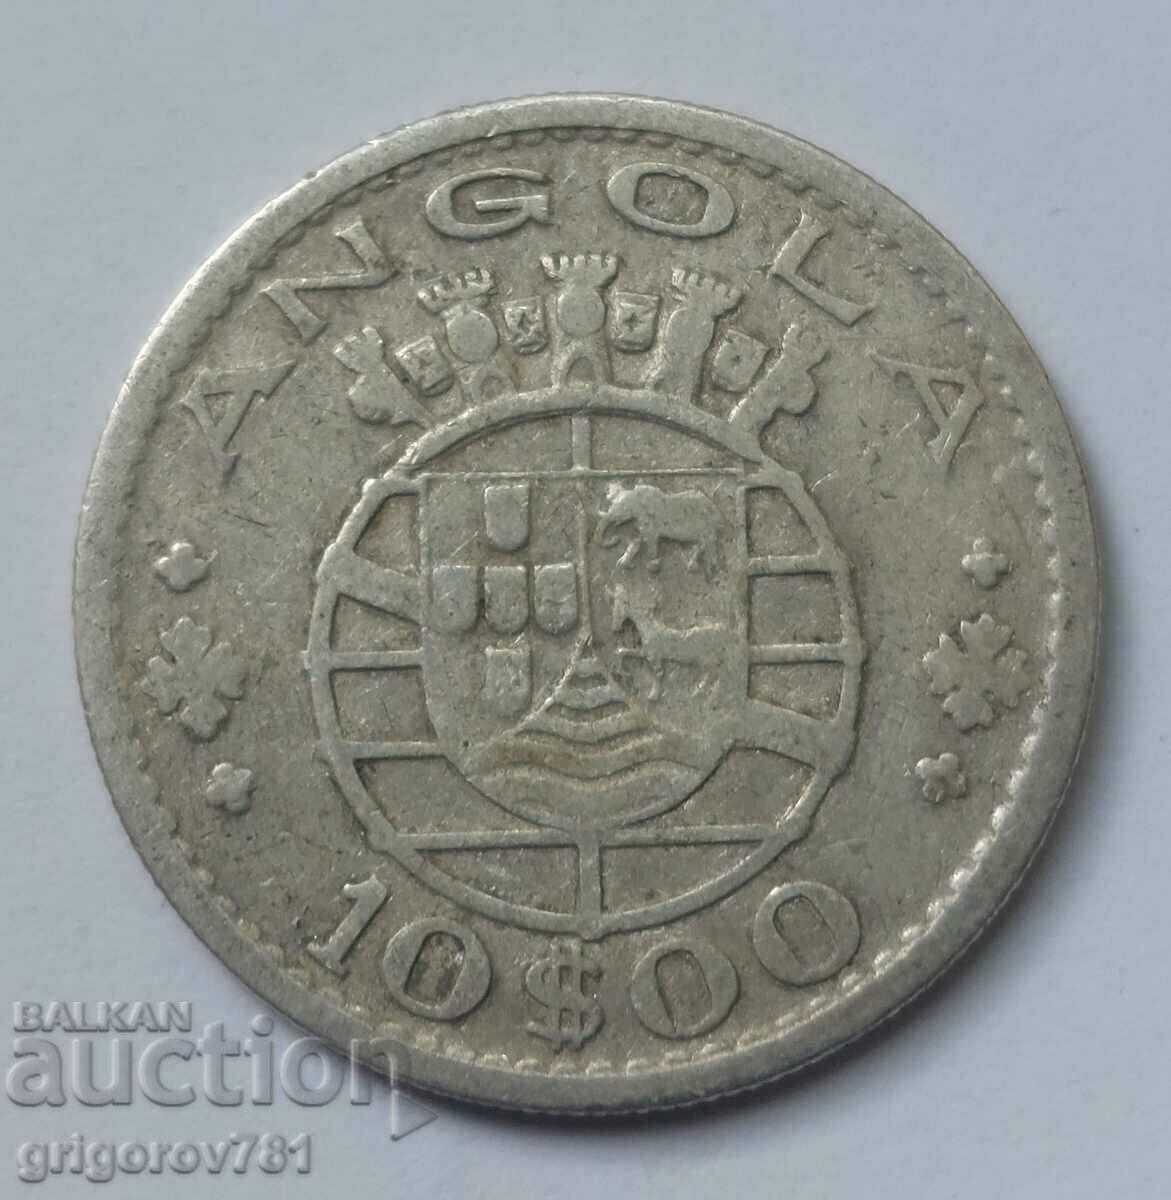 10 Escudo Silver Angola 1952 - Silver Coin #15